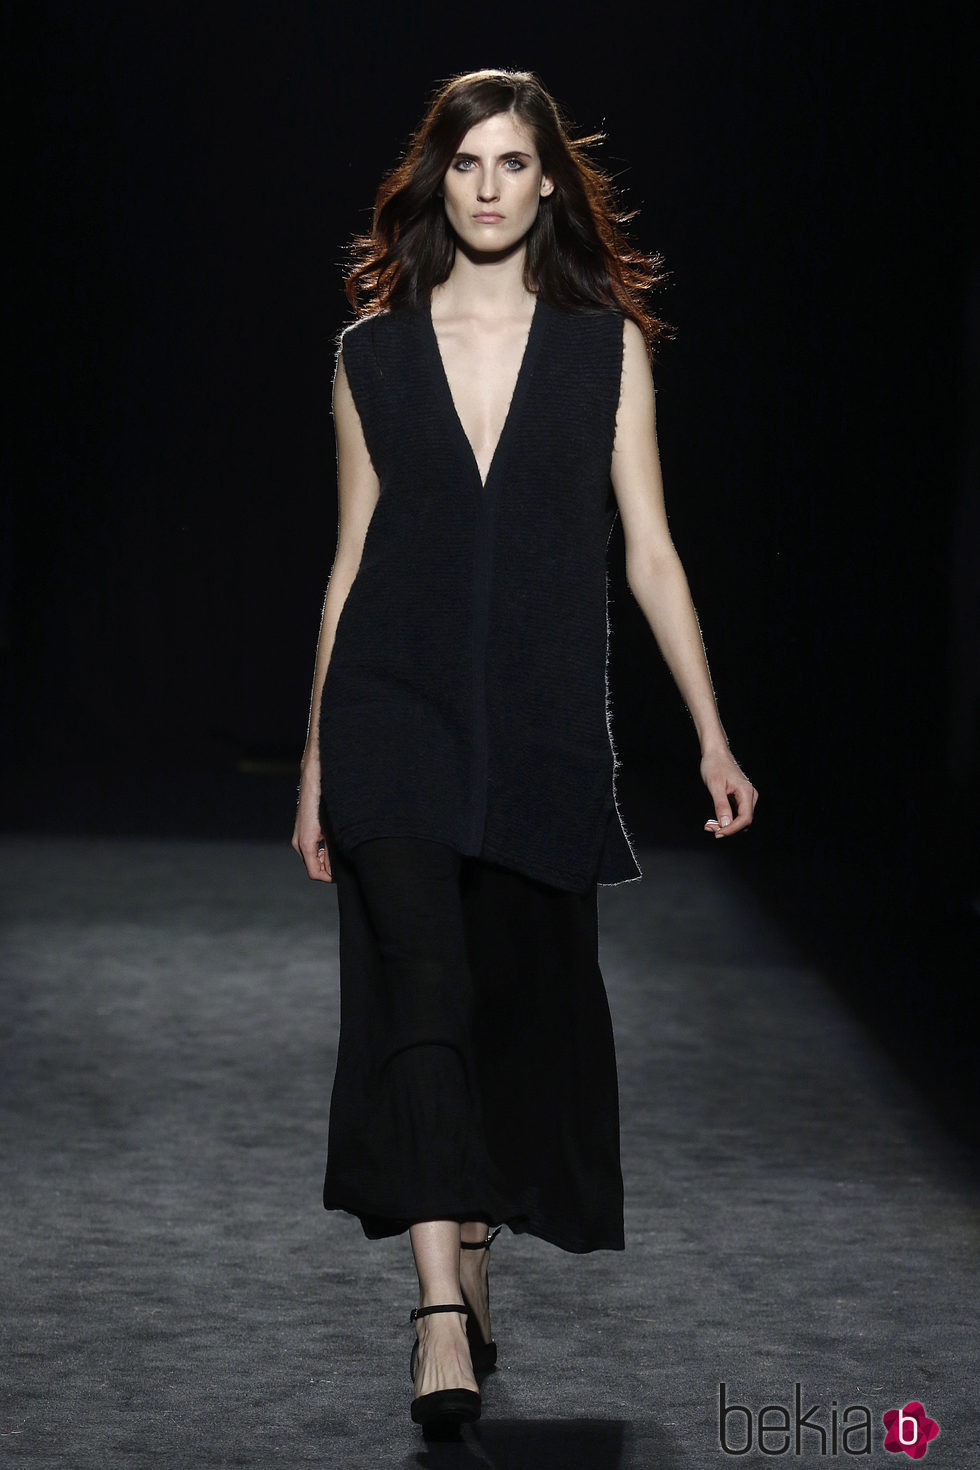 Vestido negro de la colección otoño/invierno 2016/2017 de Sita Murt en 080 Barcelona Fashion